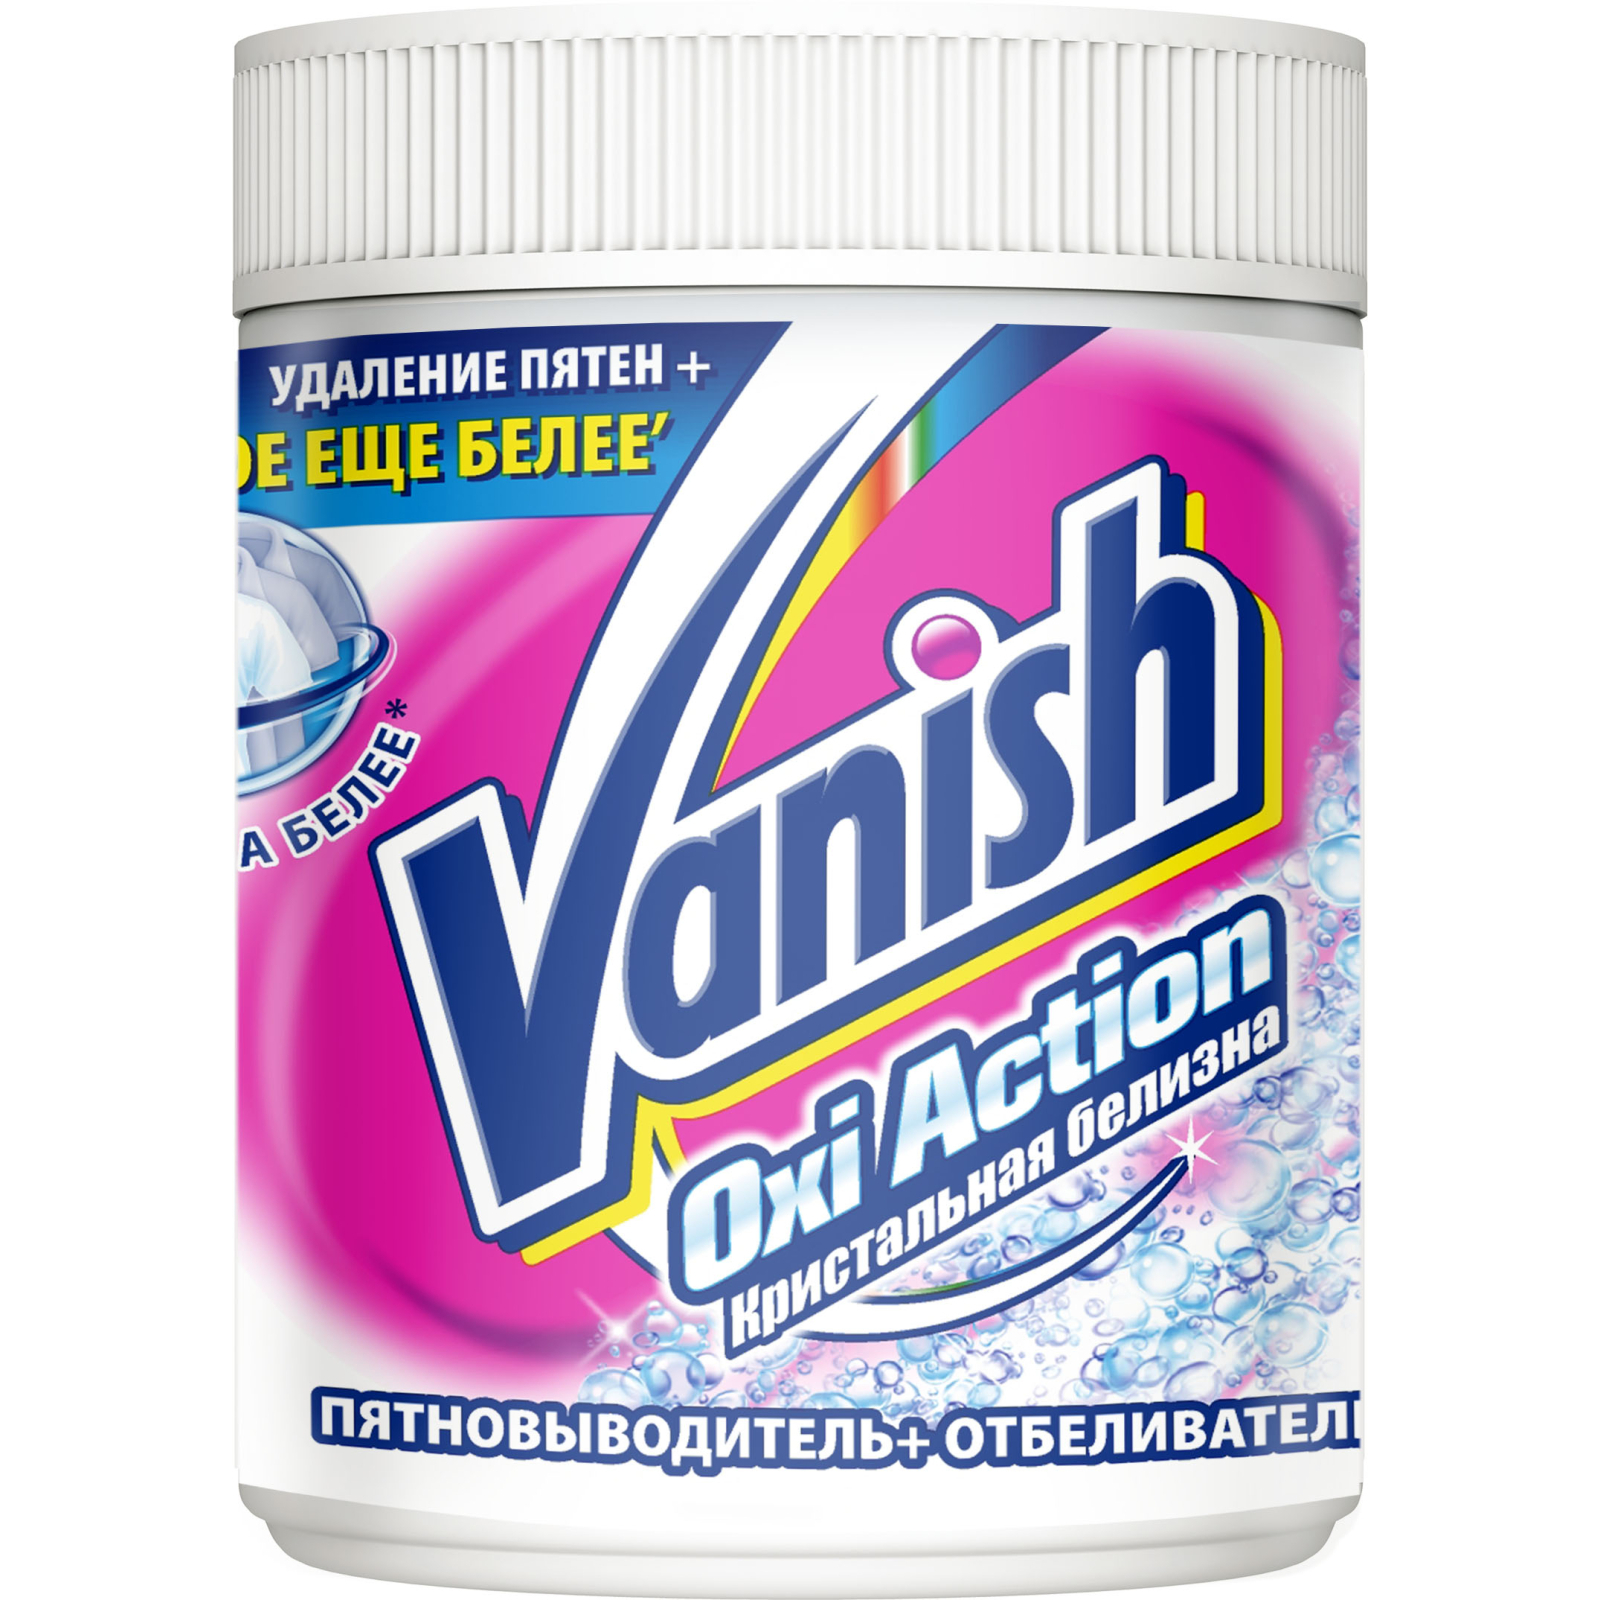 Засіб для видалення плям Vanish Oxi Action Crystal White 1 кг (5011417544570)